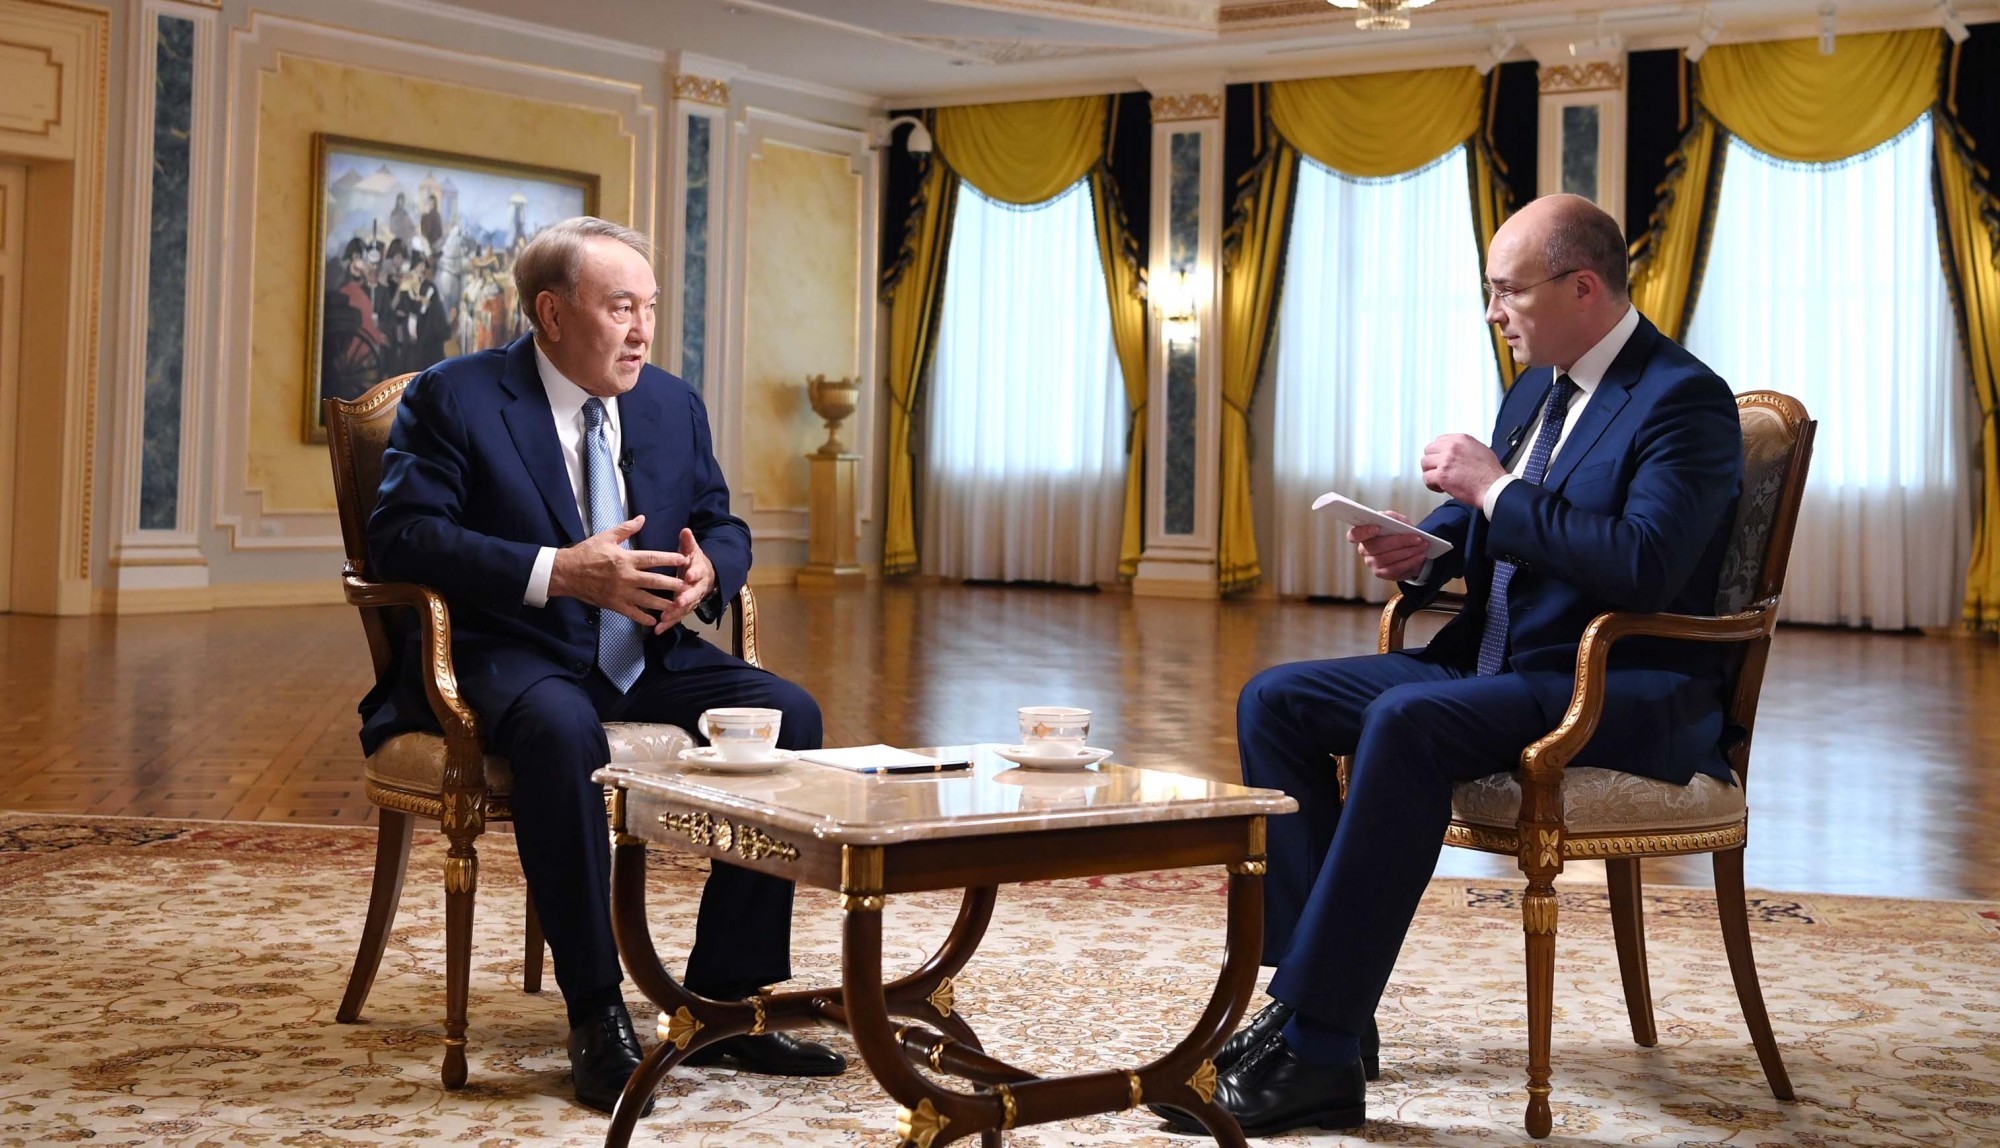 Нурсултан Назарбаев дал интервью телеканалам ВГТРК